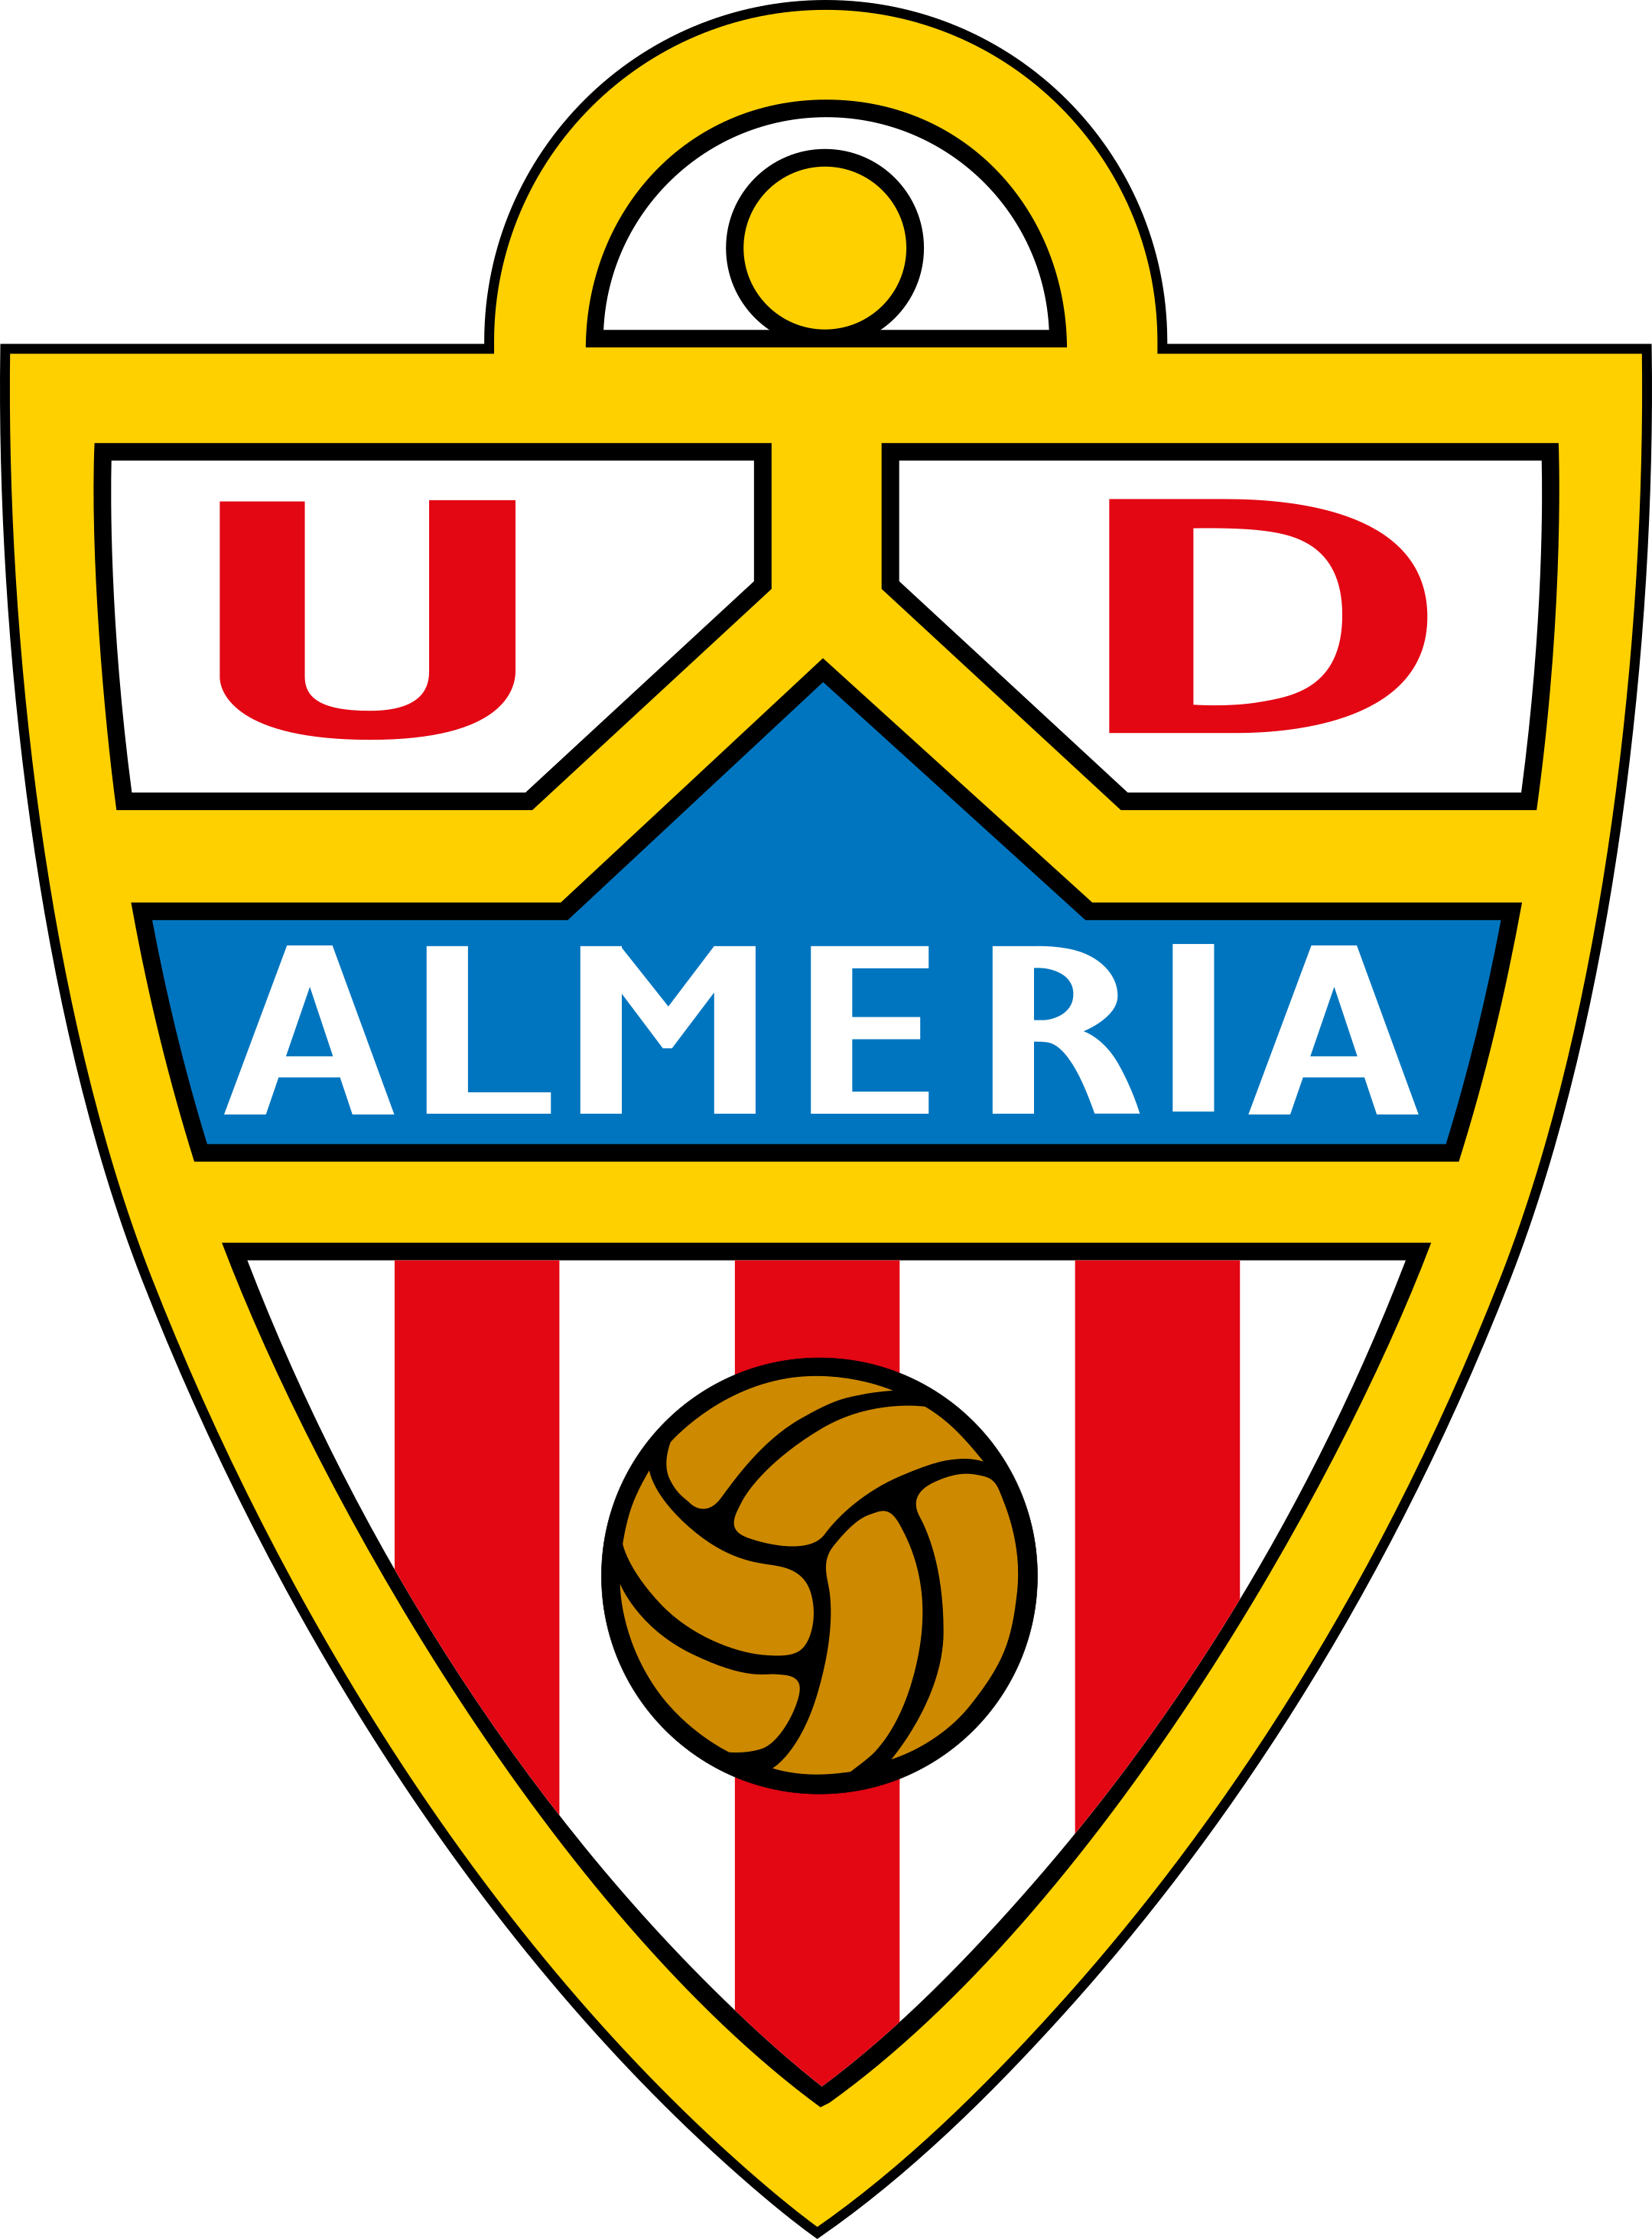 ud almeria logo 1 - UD Almeria Logo